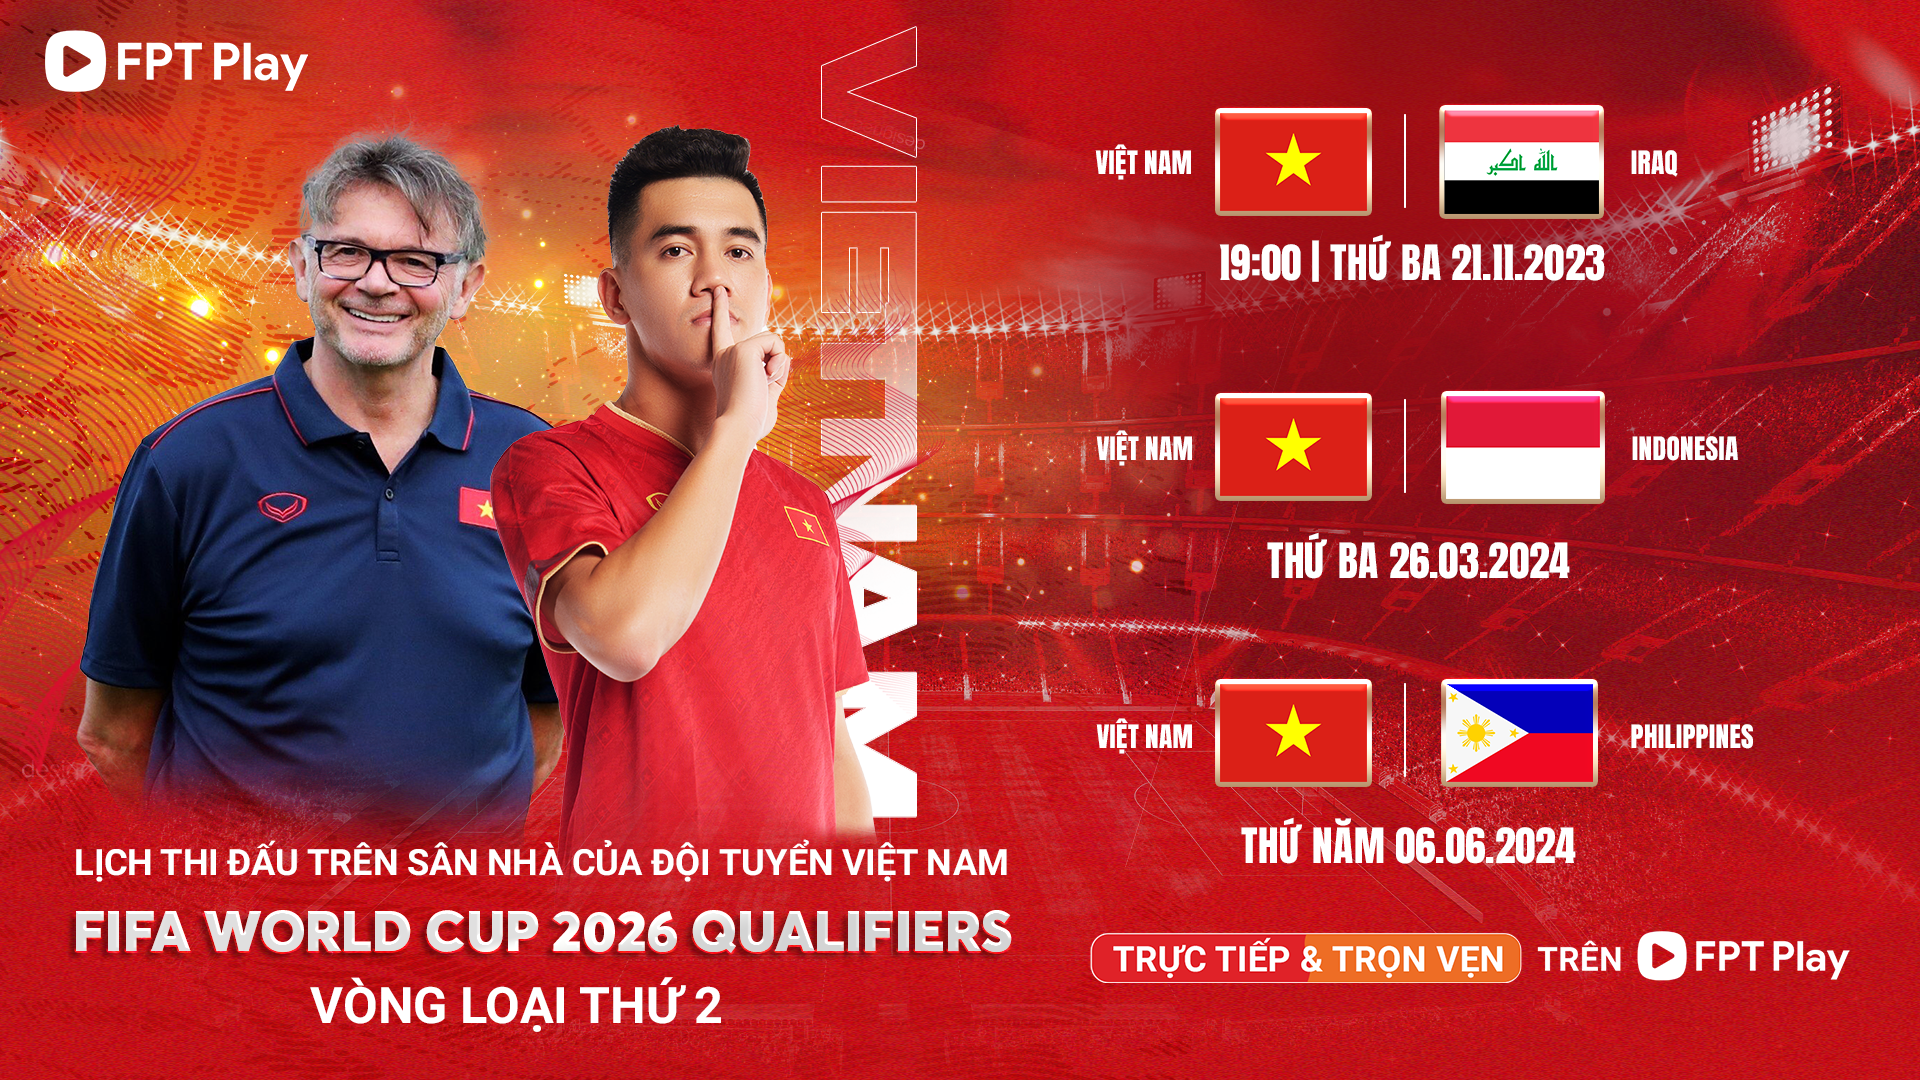 Hồi hộp chờ bản quyền phát sóng trực tiếp trận đội tuyển Việt Nam - Philippines - Ảnh 1.